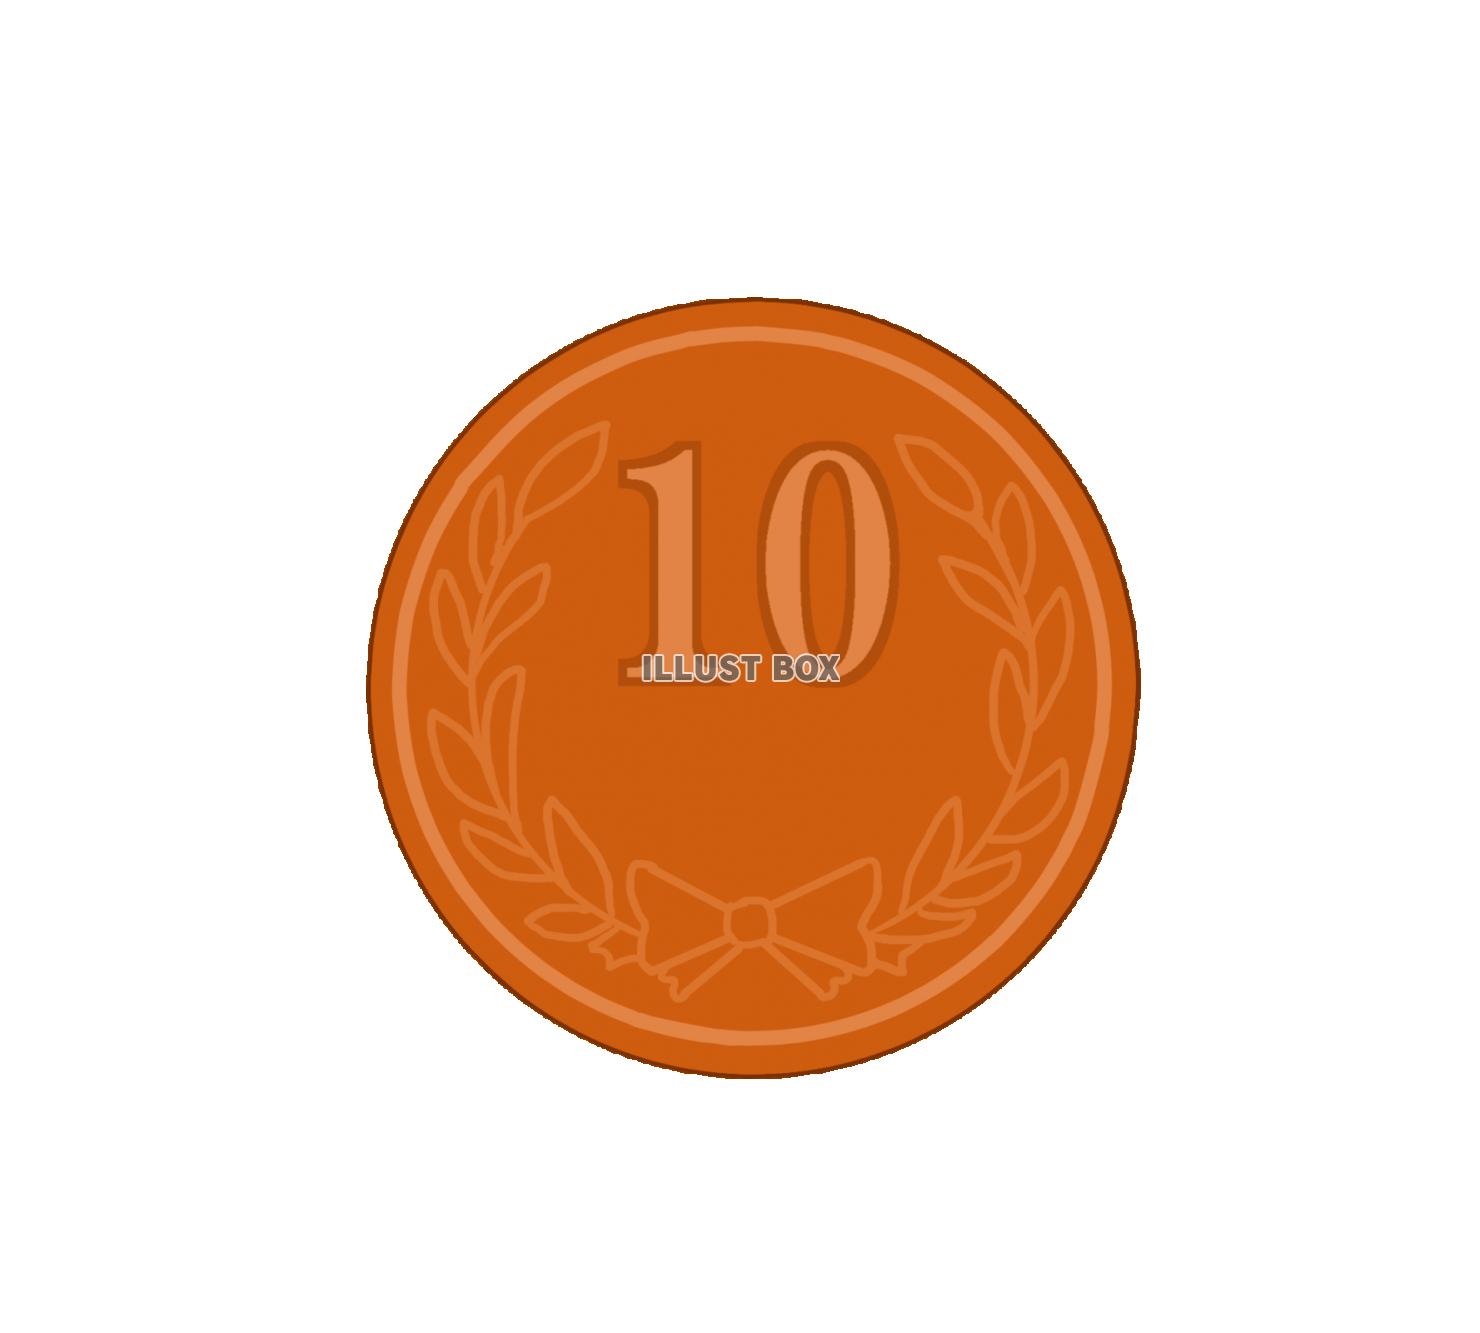 10円玉